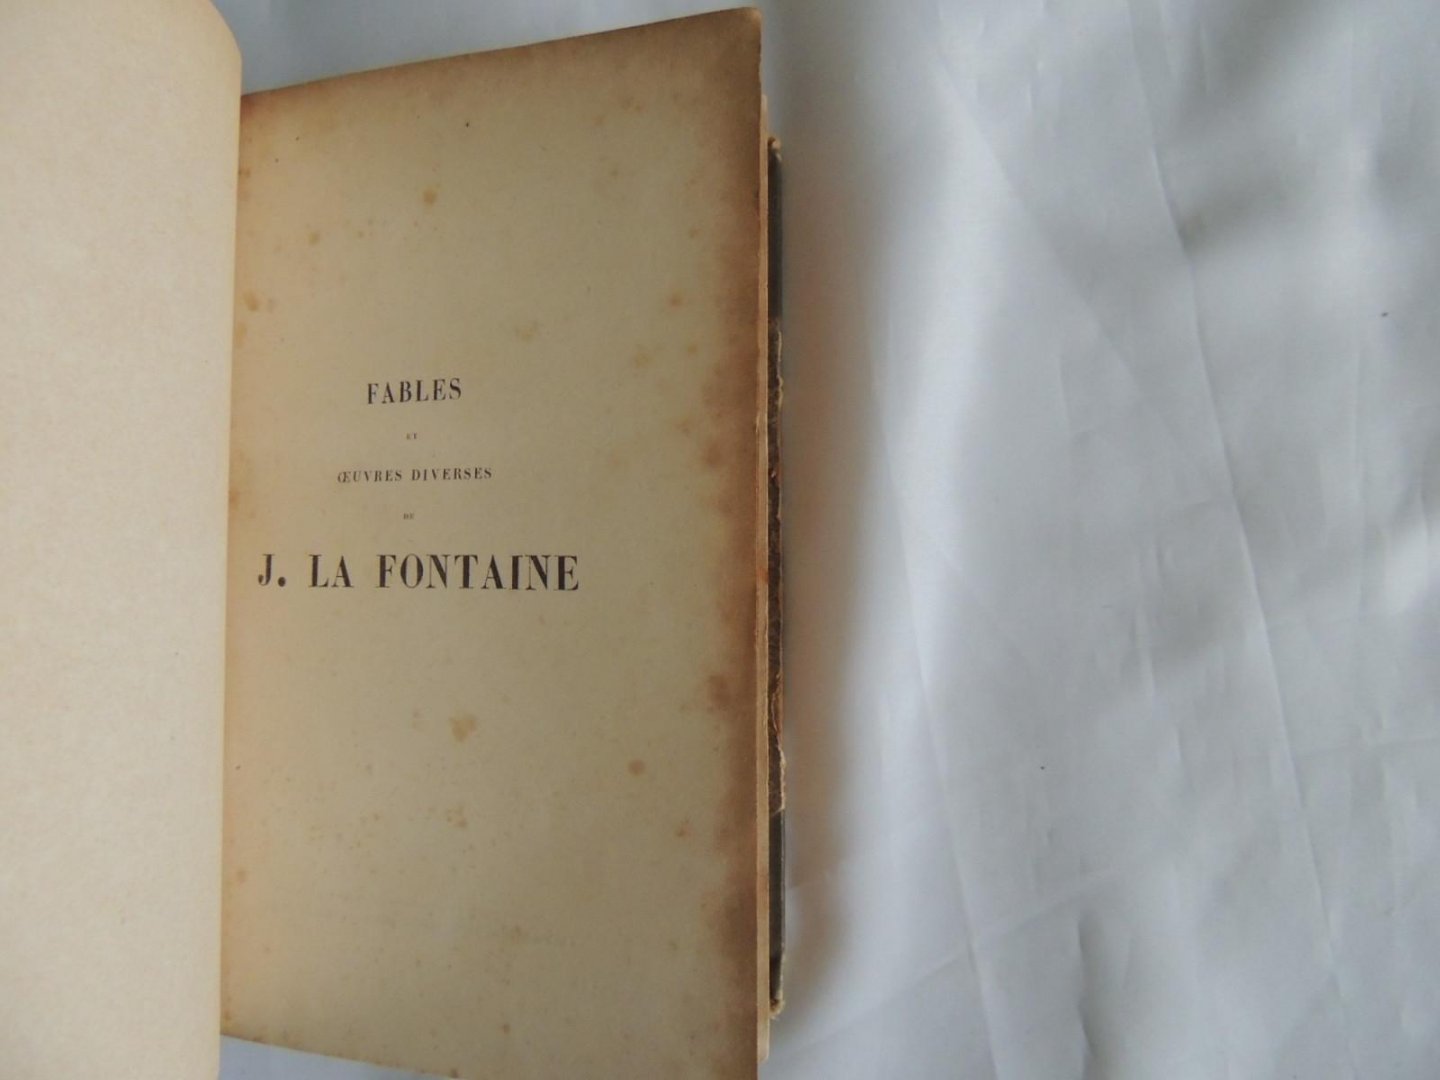 Jean de La Fontaine; C A Walckenaer - Fables, et oeuvres diverses de J. La Fontaine ; avec des notes et une nouvelle notice sur sa vie par C.A. Walckenaer.